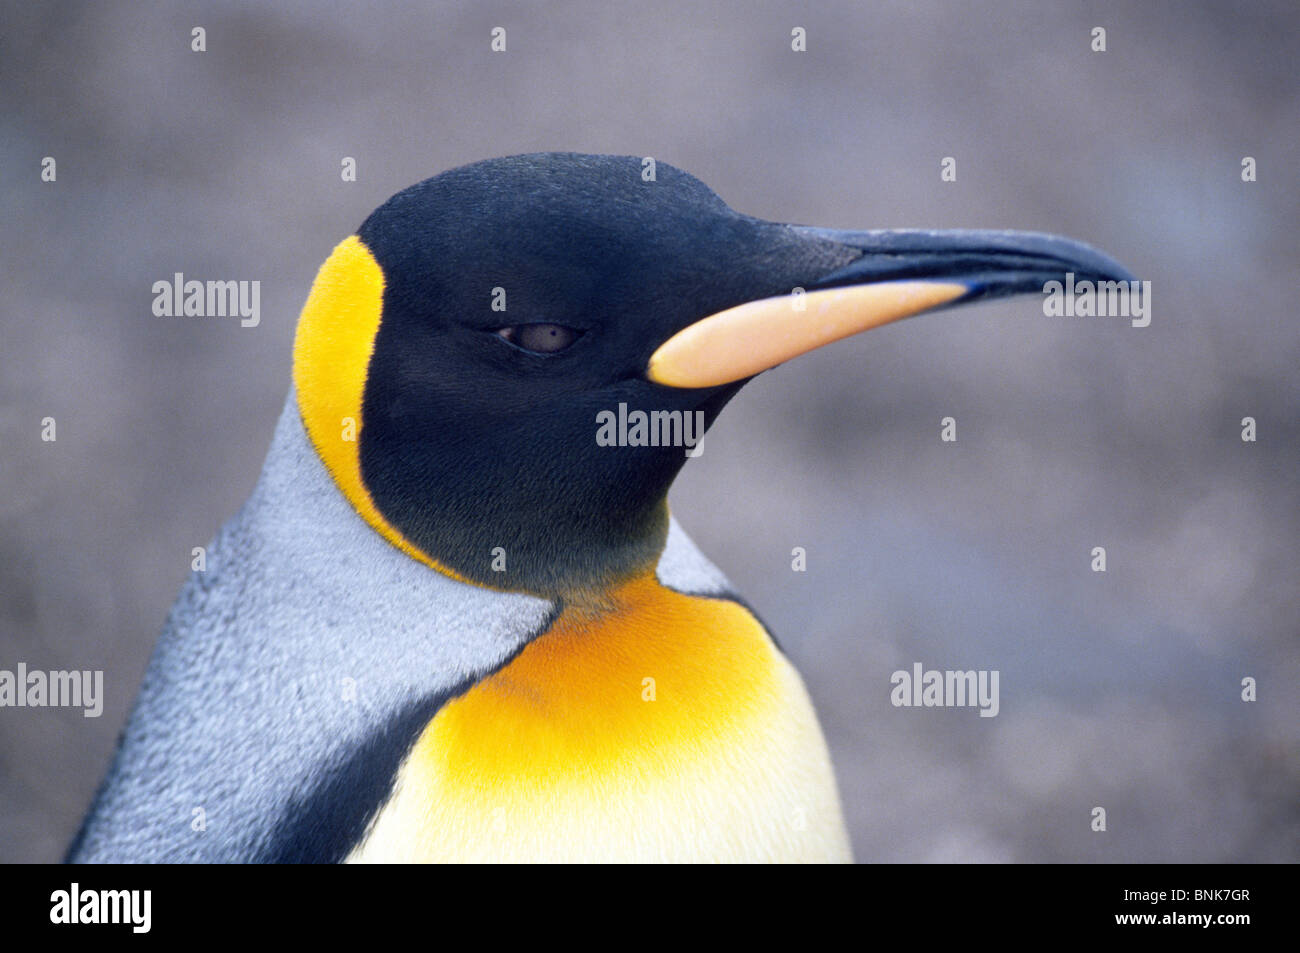 Plumaje de color naranja en la cabeza y pecho superior identificar Pingüinos rey, como esta en la Isla Georgia del Sur en el sur del Océano Atlántico, cerca de la Antártida. Foto de stock